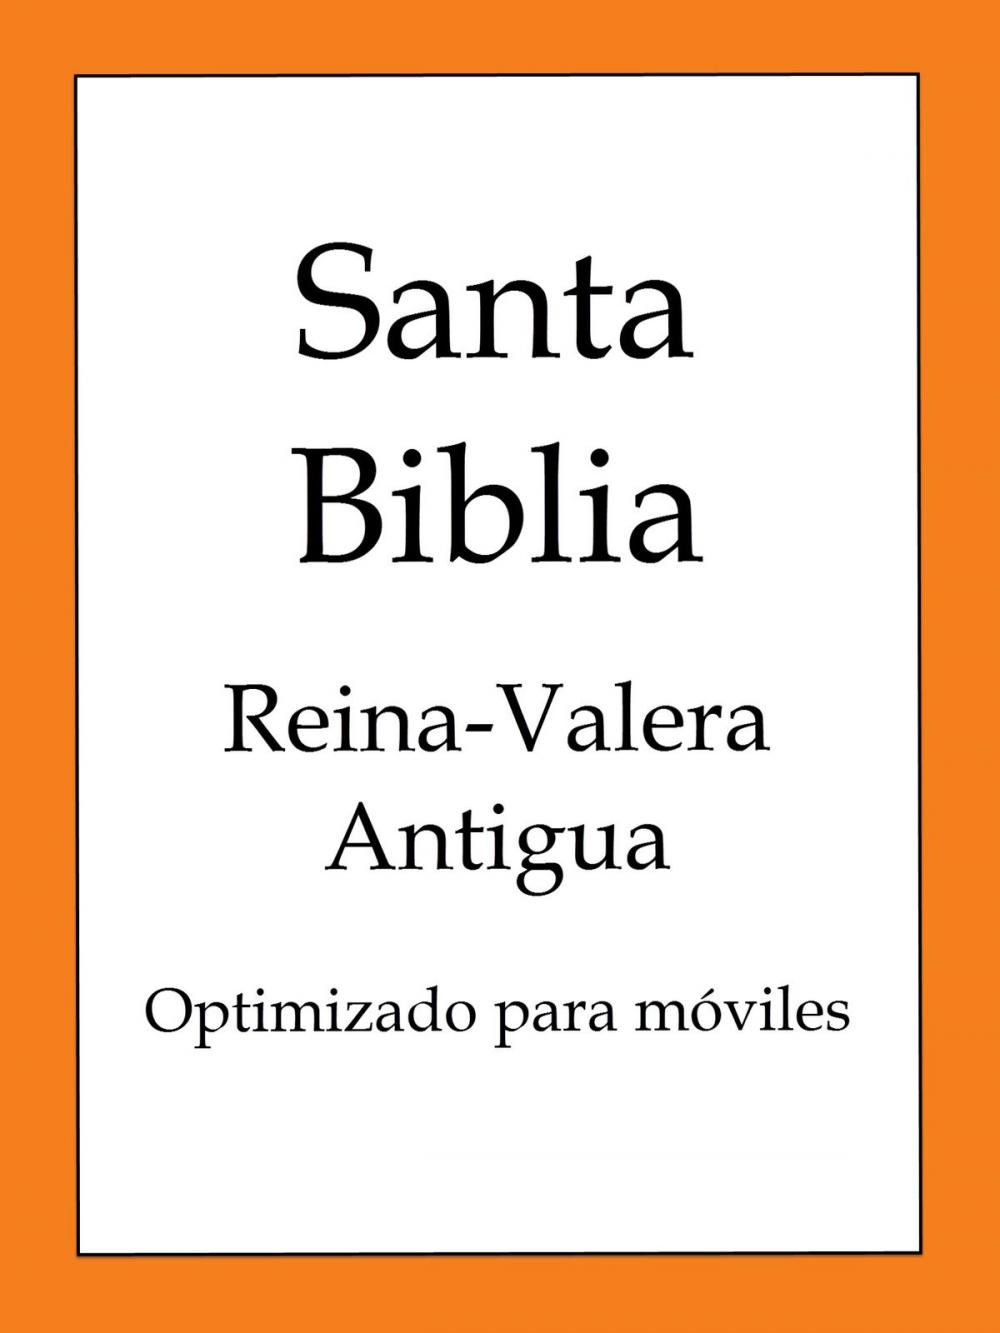 Big bigCover of La Biblia, Reina-Valera Antigua